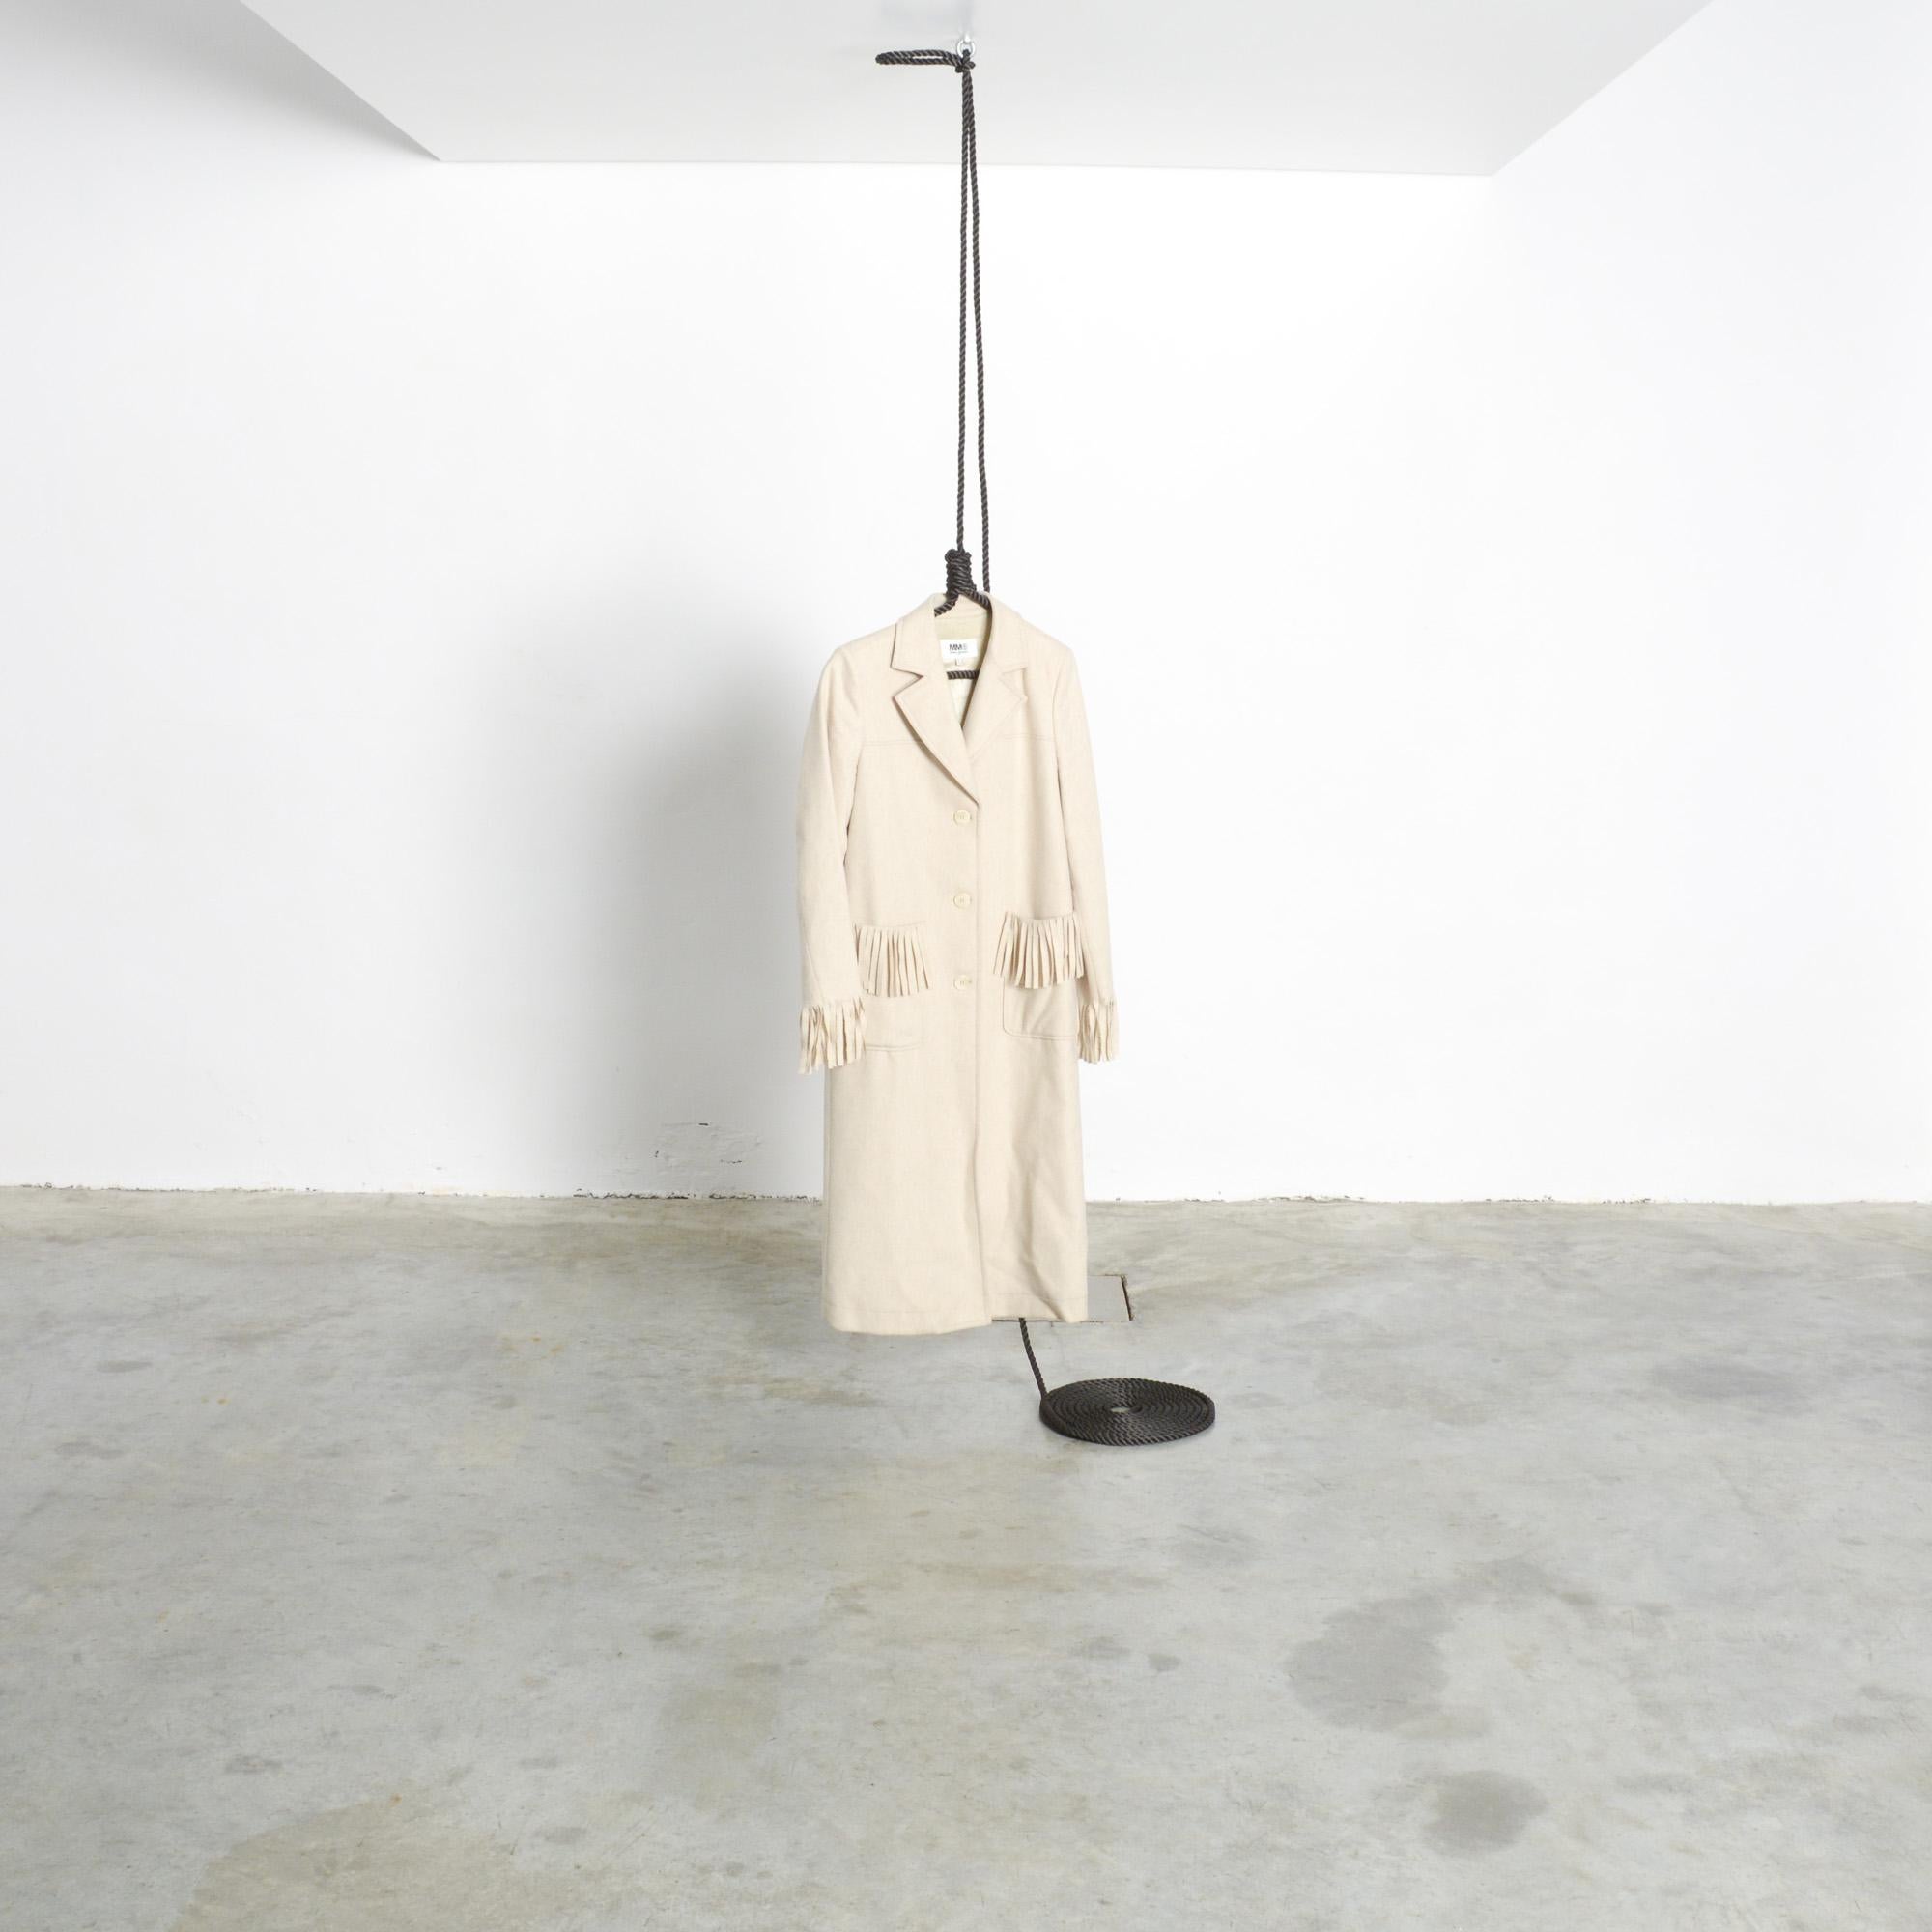 Der Hanger.01 hat ein Design, das kaum einer Erklärung bedarf. Ein Kleiderbügel mit einer deutlichen Anspielung auf eine Schlinge, hergestellt aus Flachs, verstärkt mit einem Stahlkern und erhältlich mit einem Flaschenzug.
Dies ist ein gemeinsamer